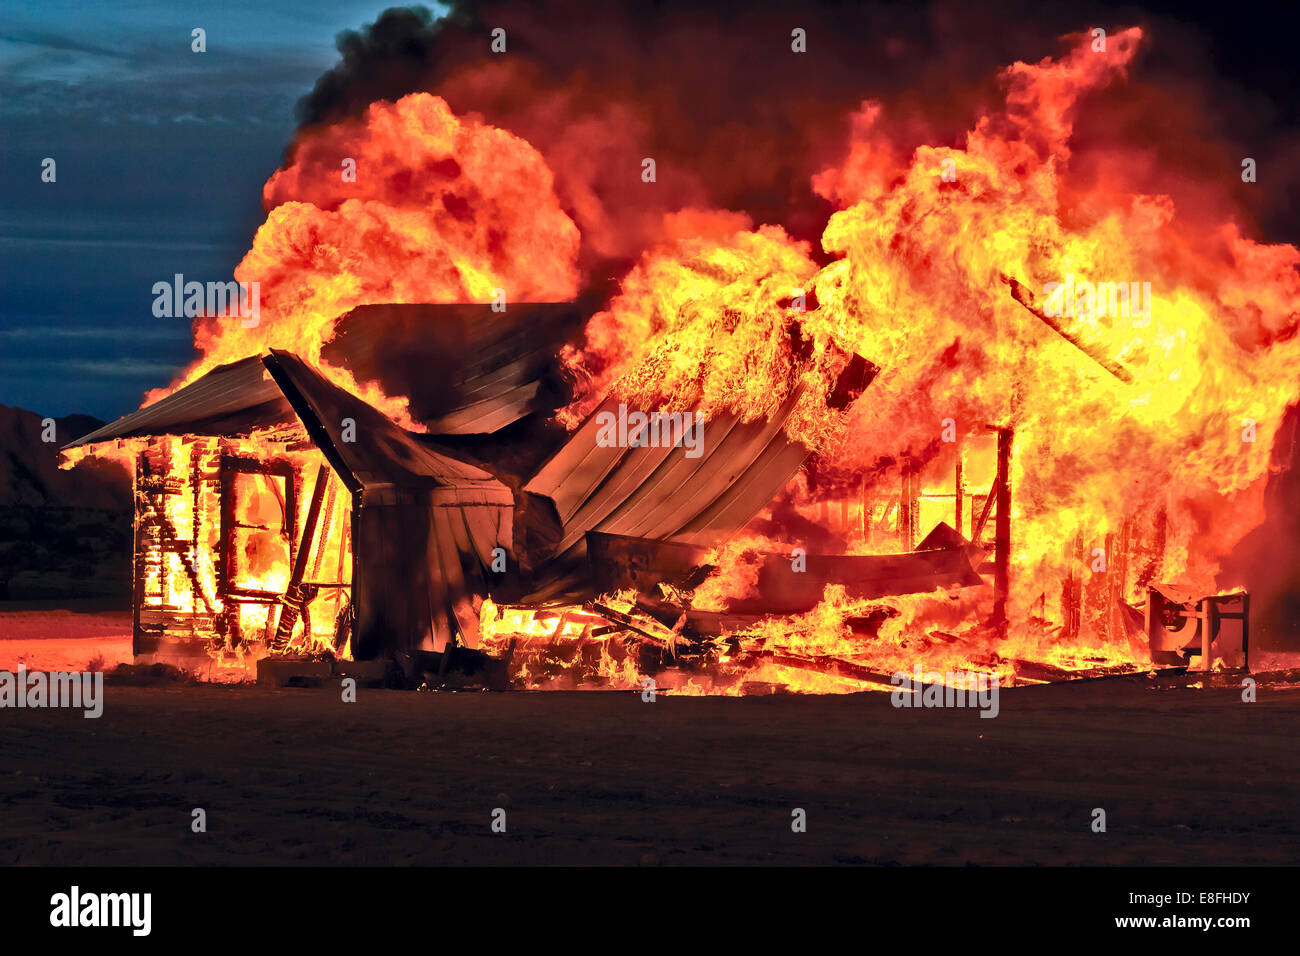 Abandoned house on fire, Gila Bend, Arizona, USA Stock Photo